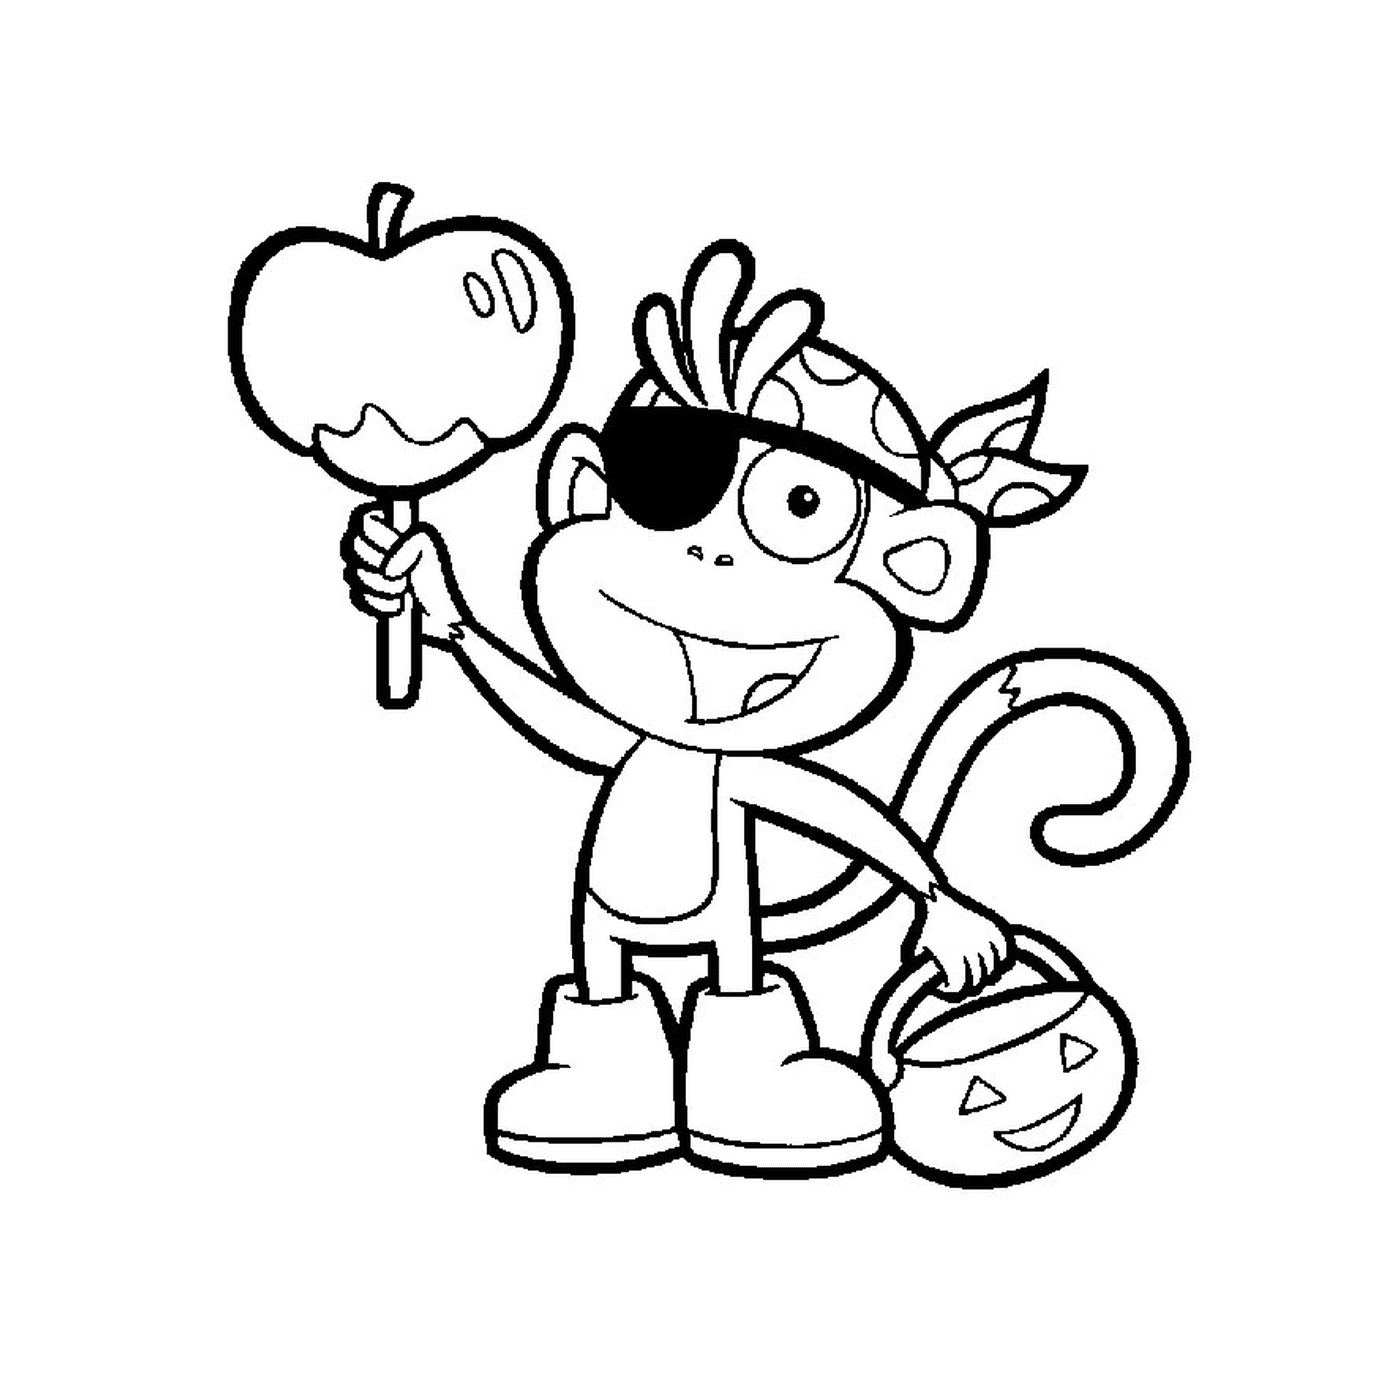  Babouche, el mono, sostiene una manzana 